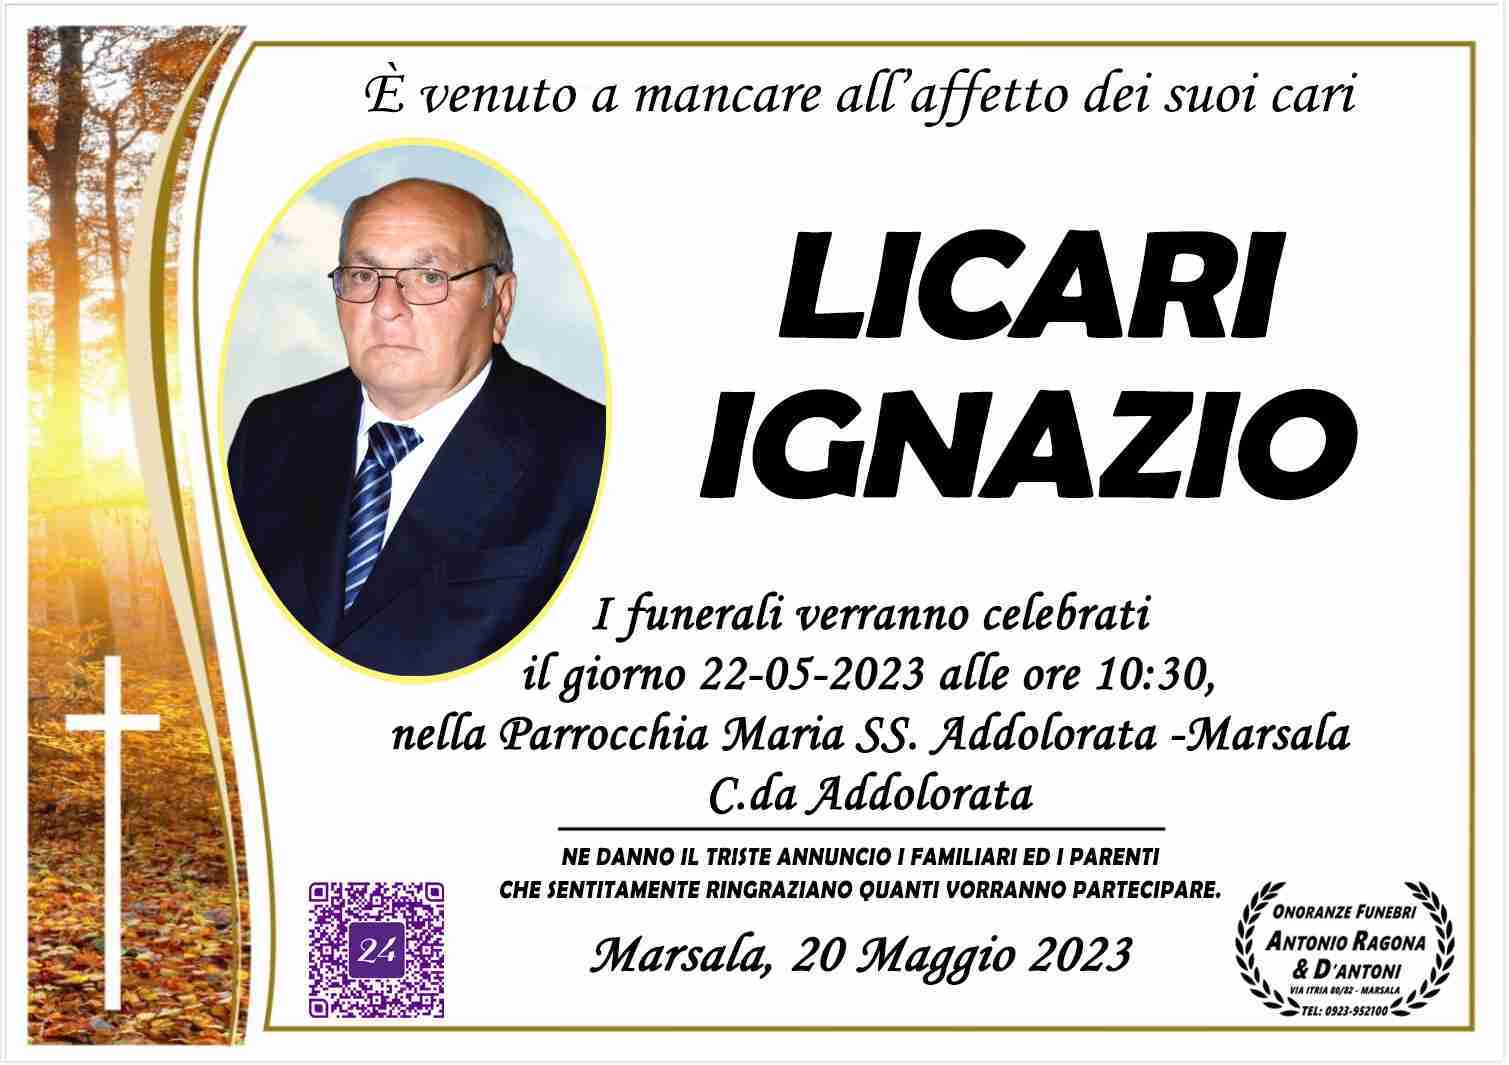 Ignazio Licari